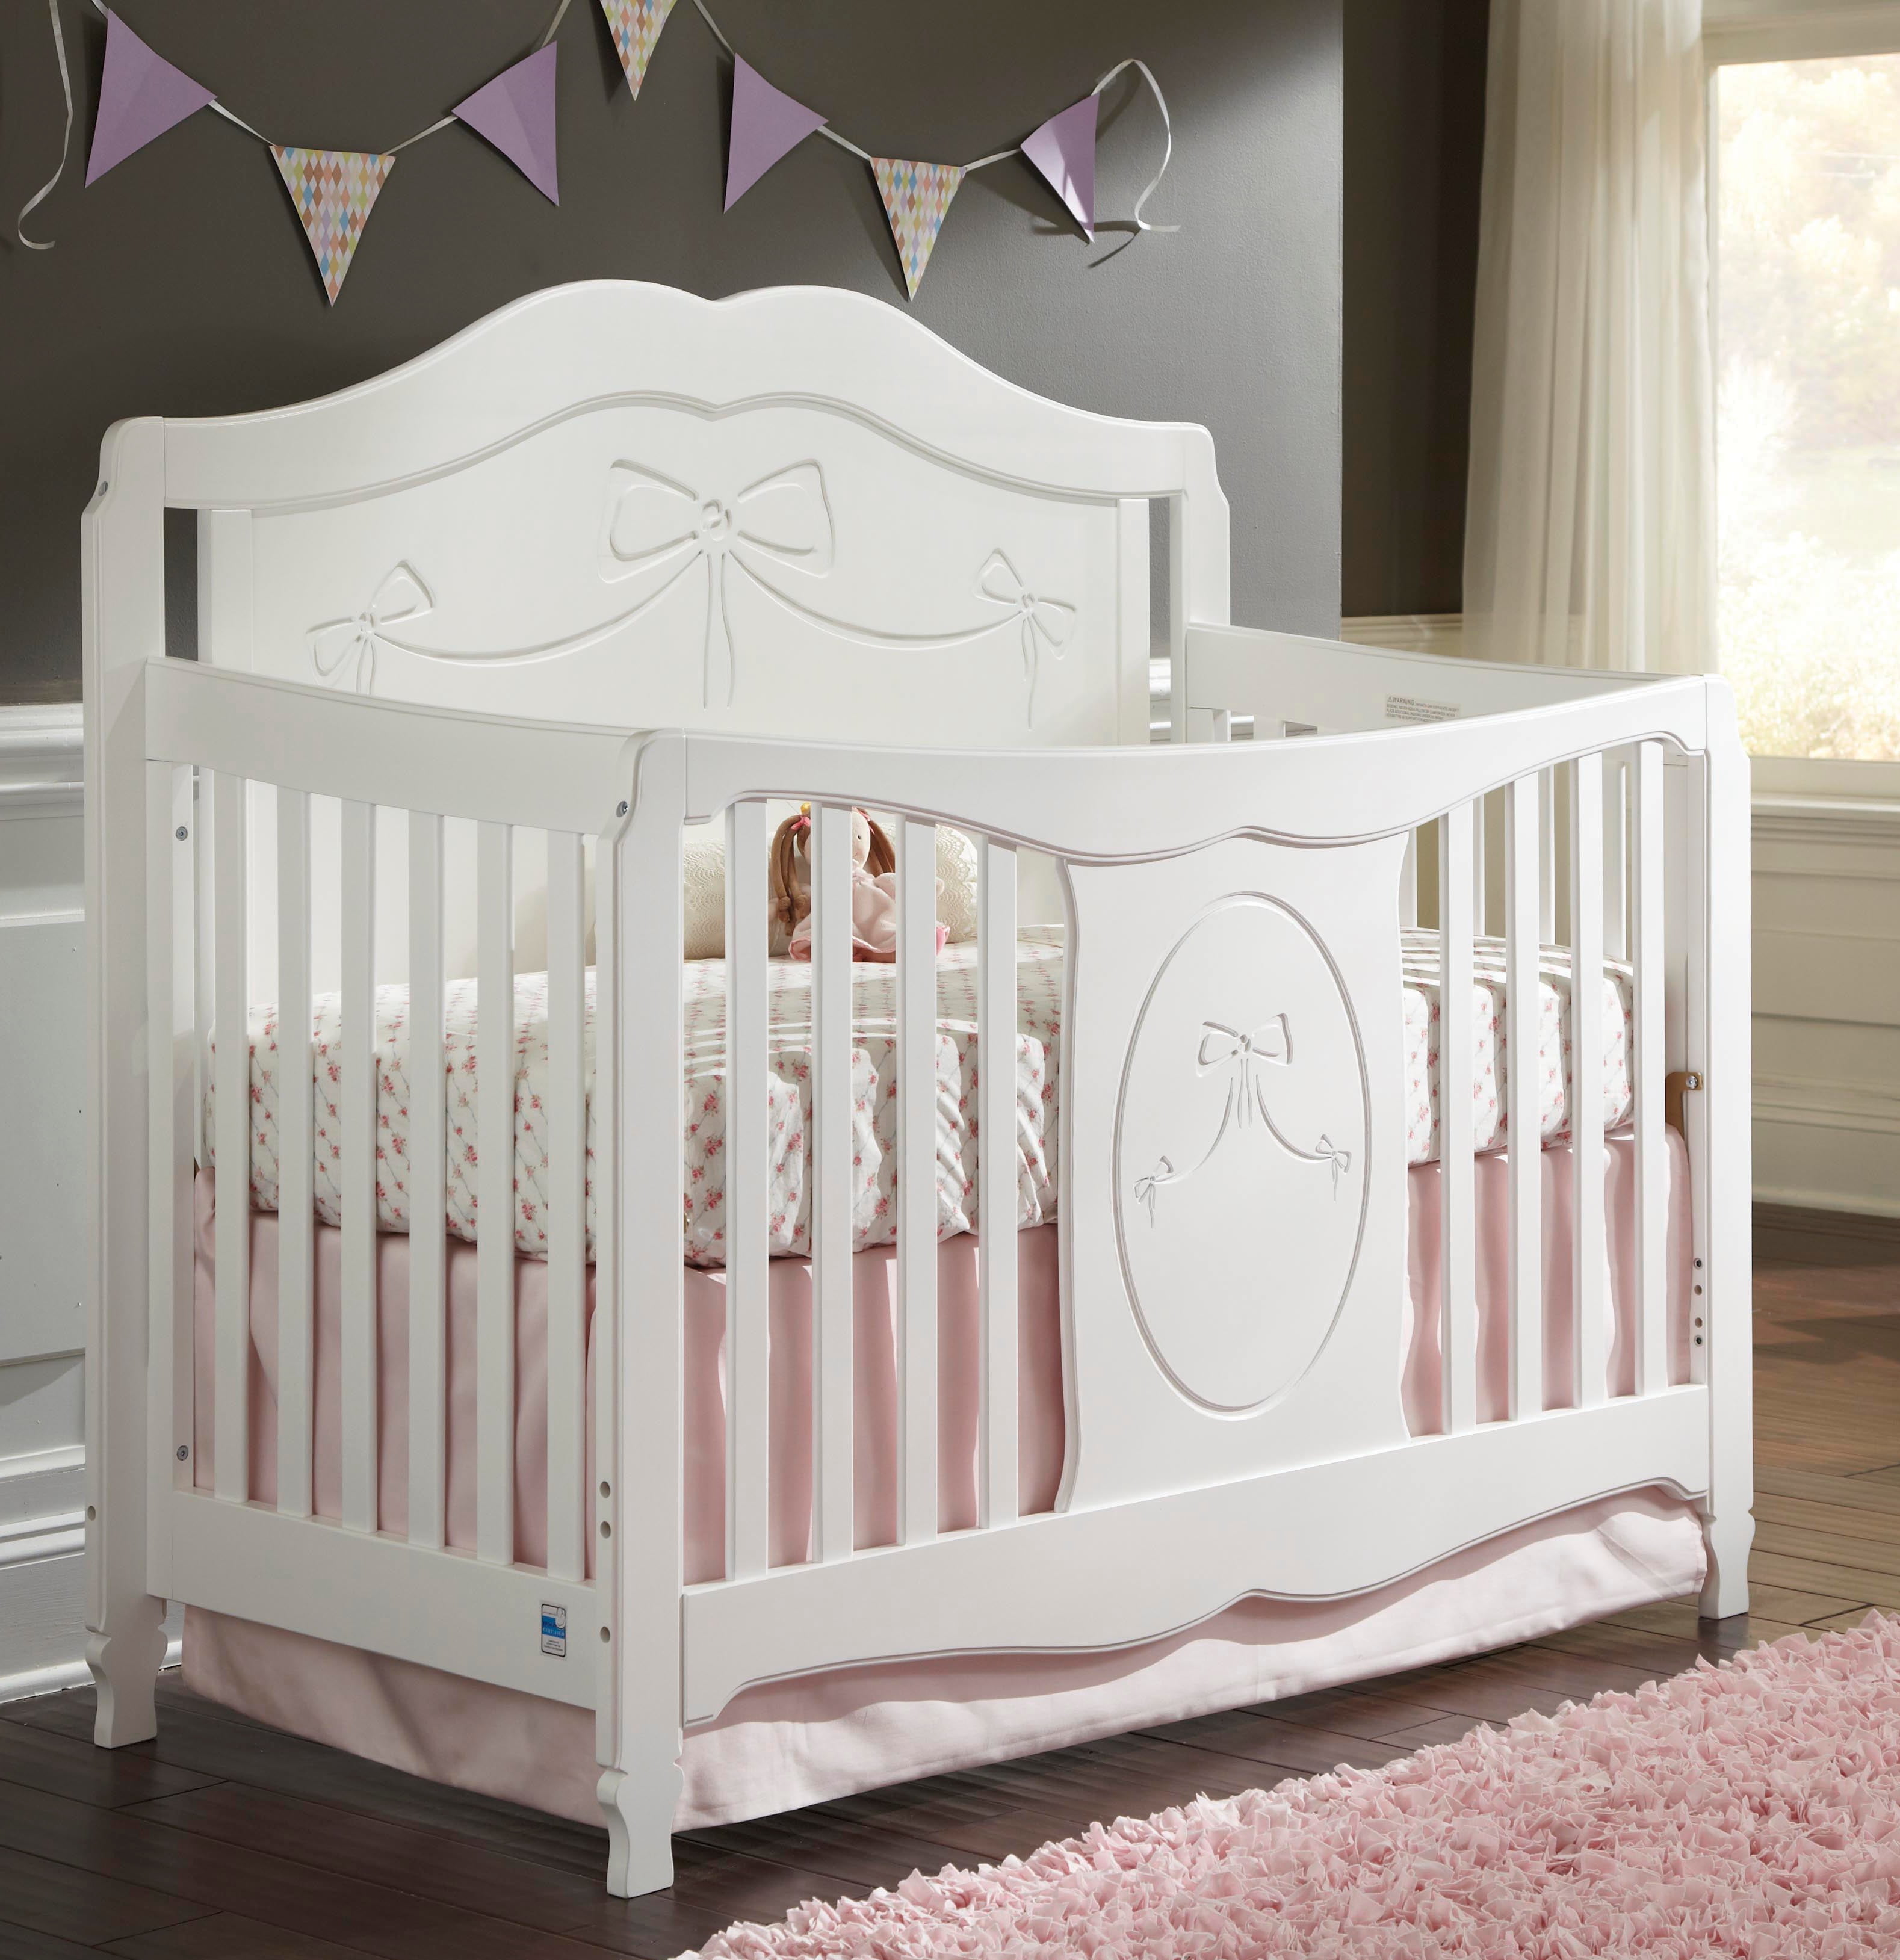 1 Convertible Baby Crib, White 